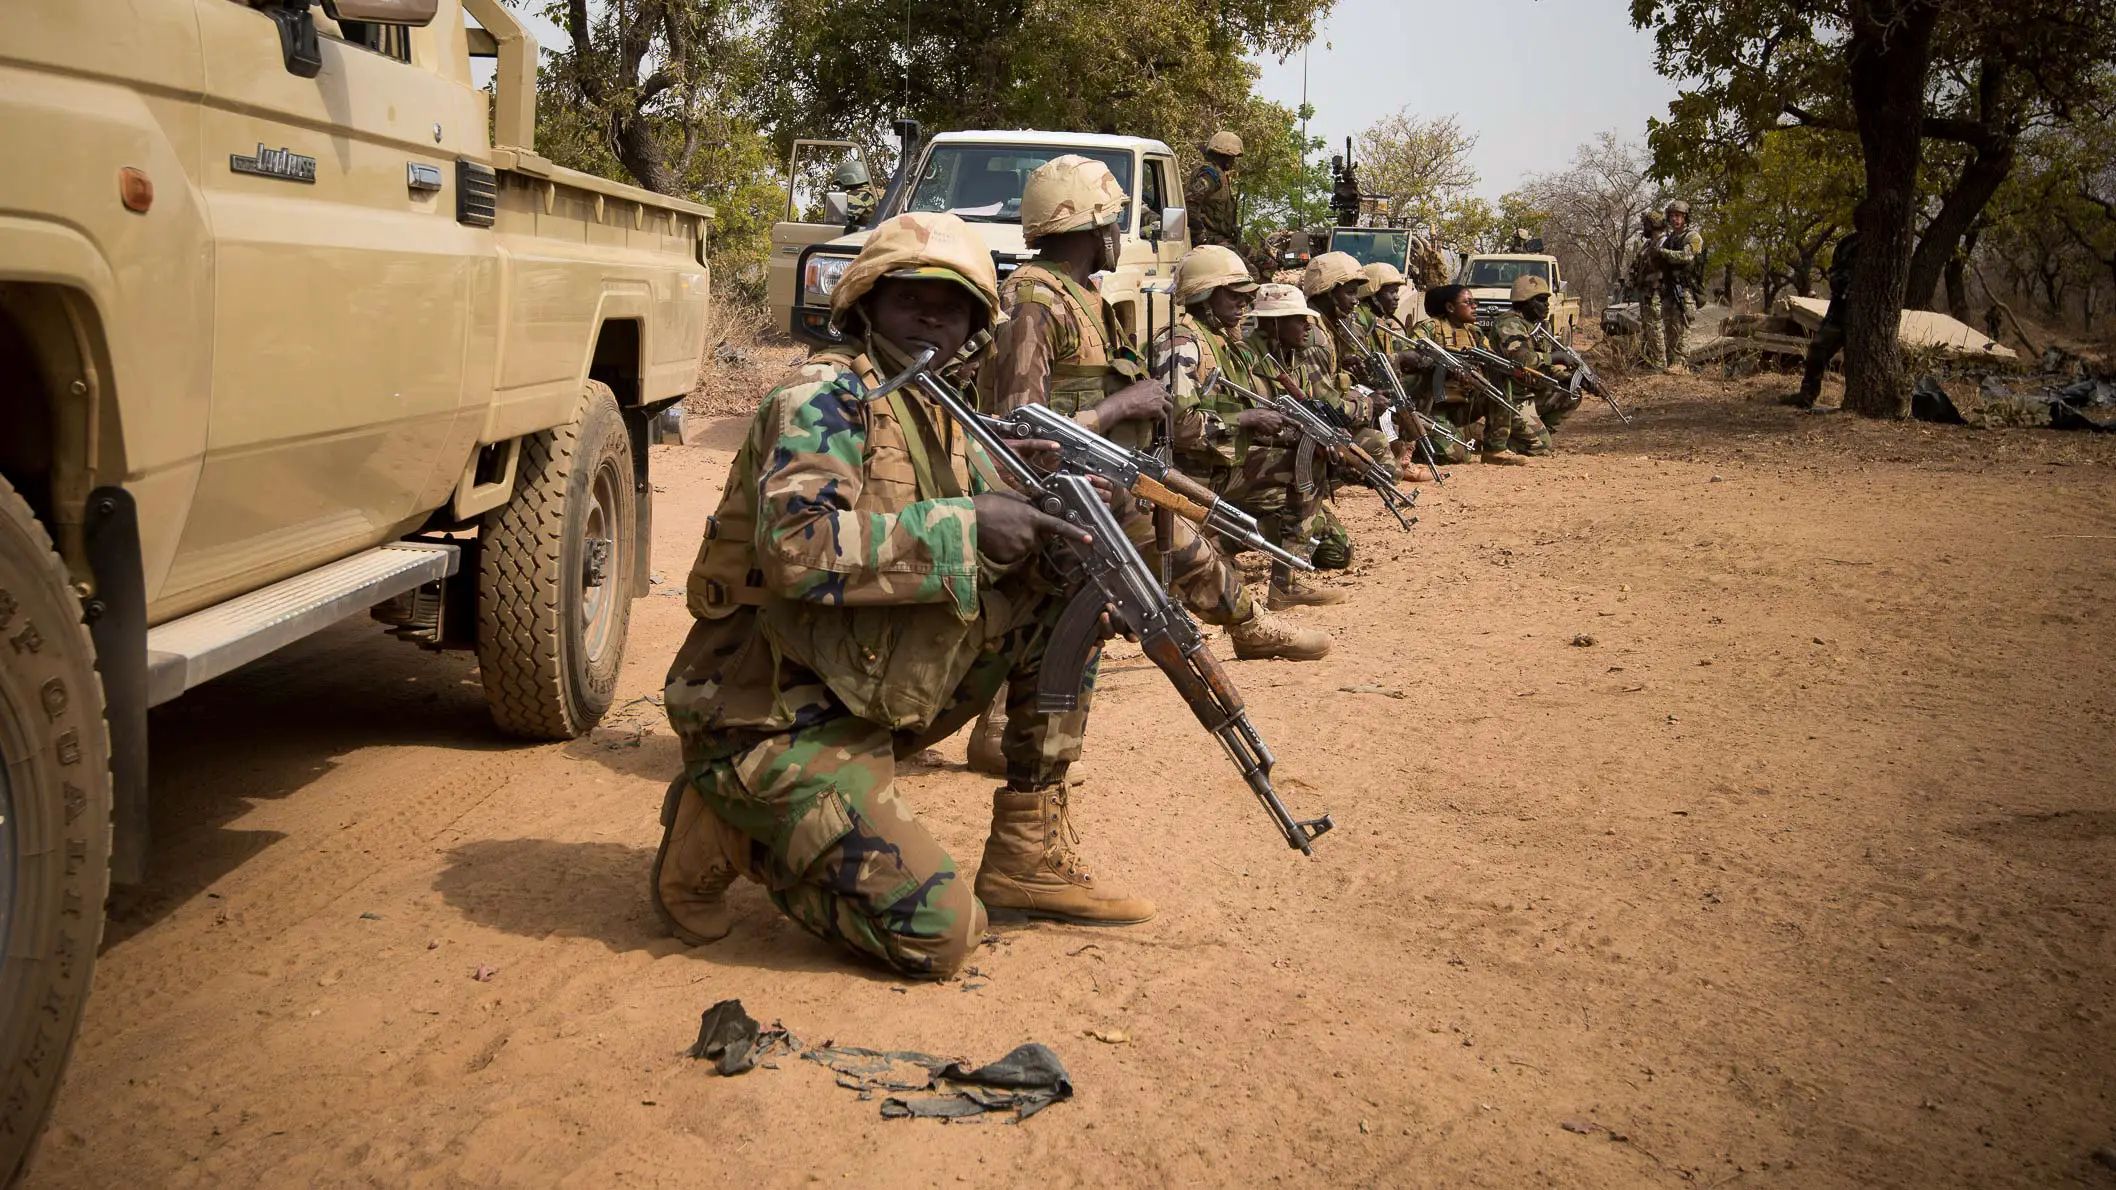 Νίγηρας: Η ECOWAS διατάσσει στρατιωτική παρέμβαση – «Αν το κάνετε θα σκοτώσουμε τον πρώην πρόεδρο» λέει η νέα κυβέρνηση